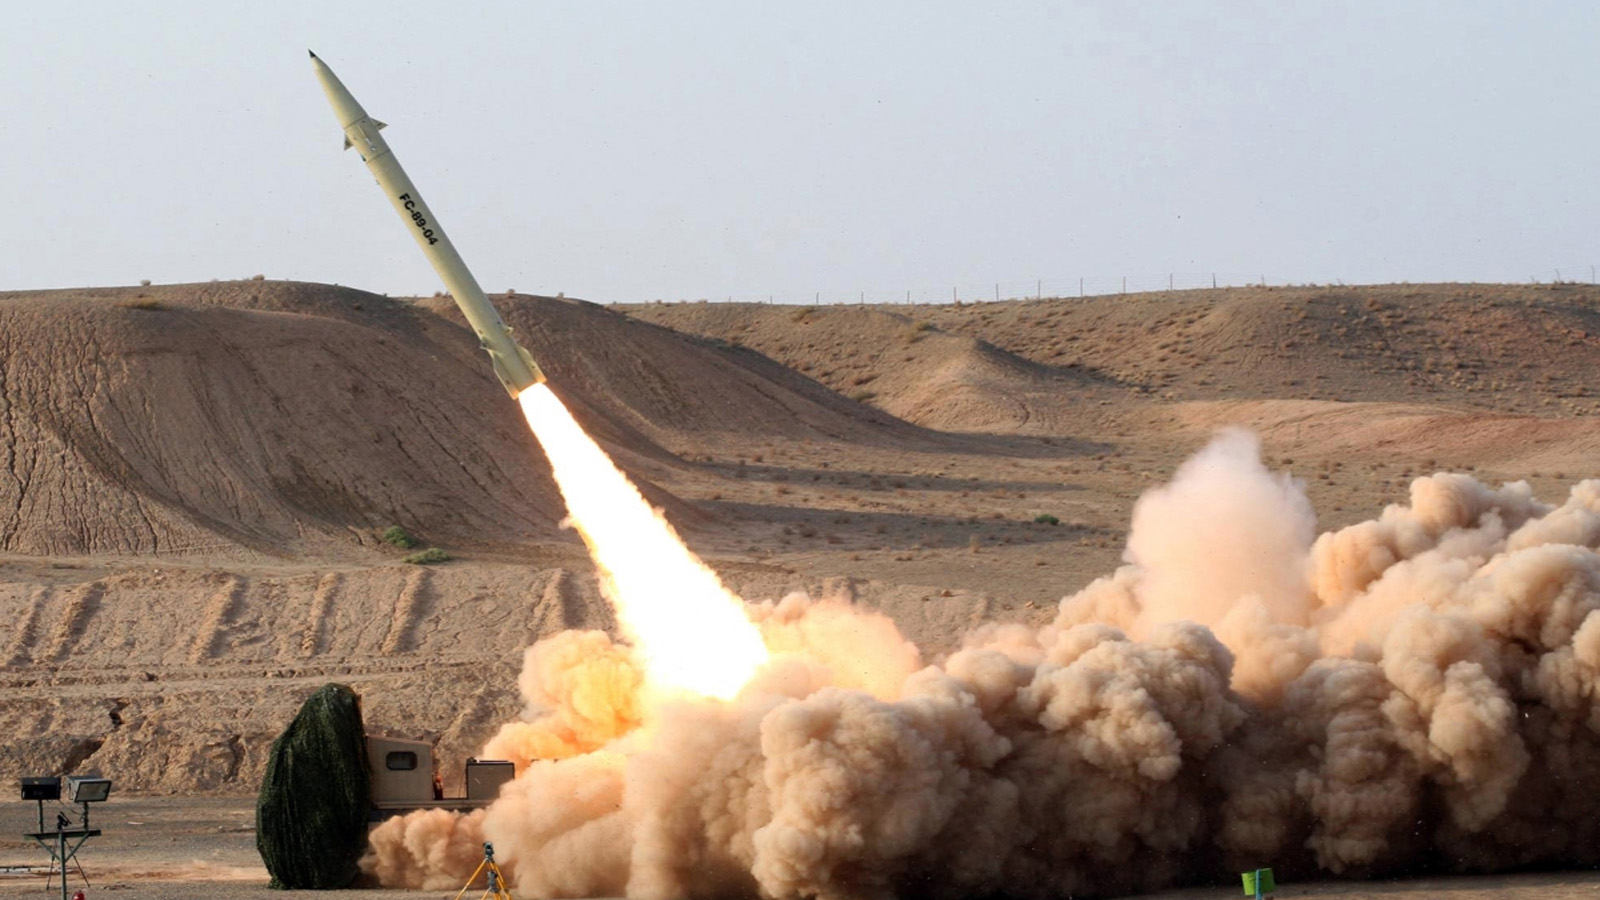 صورة غير مؤرخة نشرتها وزارة الدفاع الإيرانية لاطلاق صاروخ إيراني